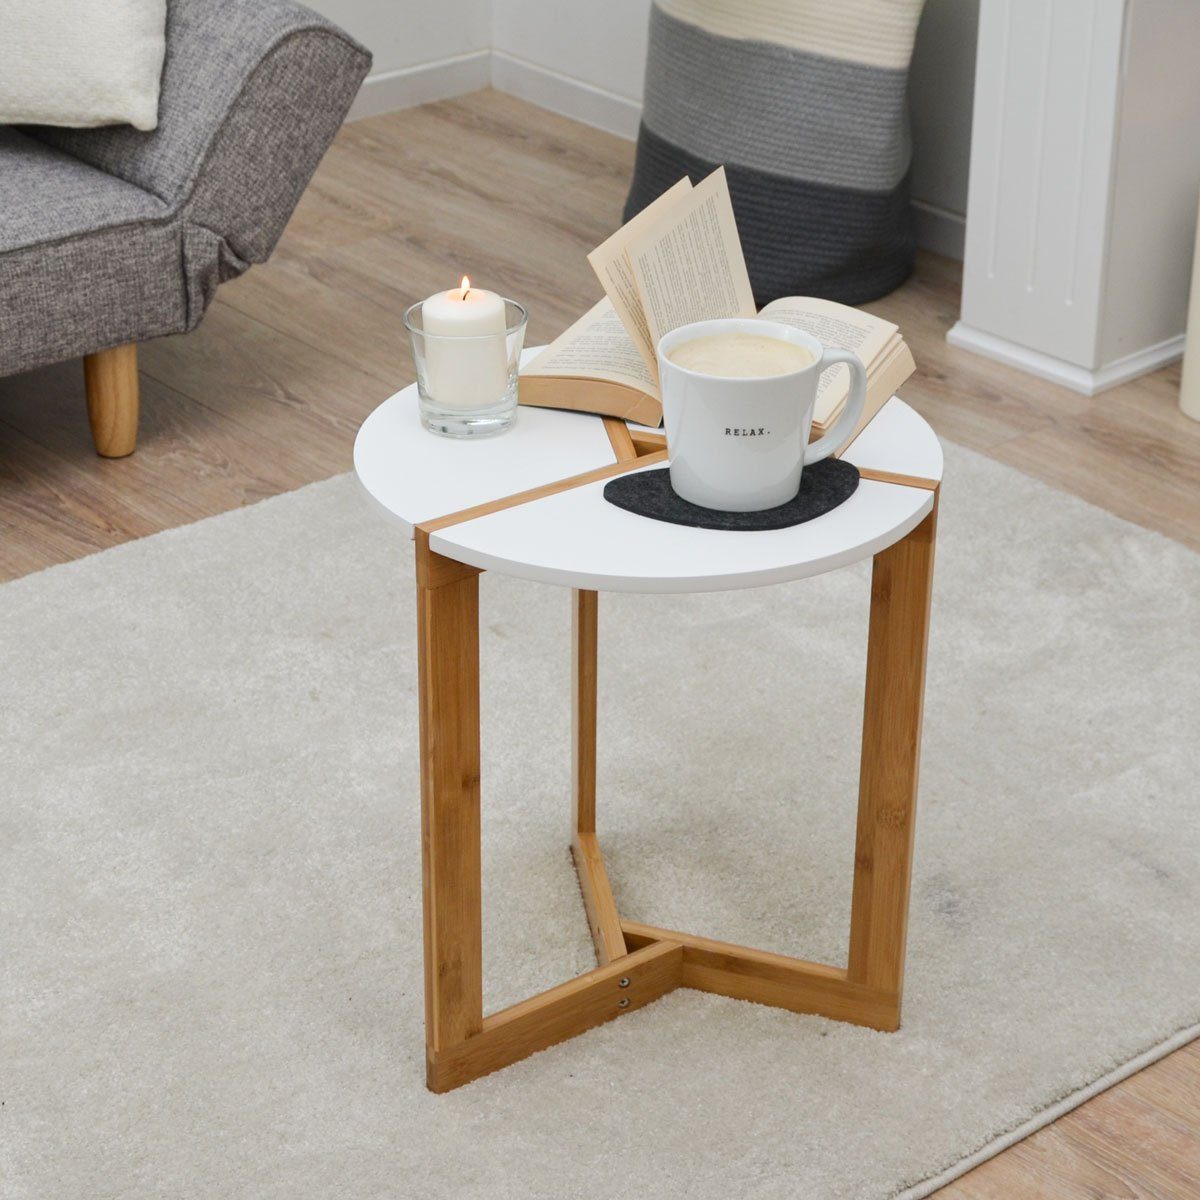 Beistelltisch Style Nachttisch Couchtisch Nordic Beistelltisch 40x45cm Holz weiss, DuneDesign Tisch Rund